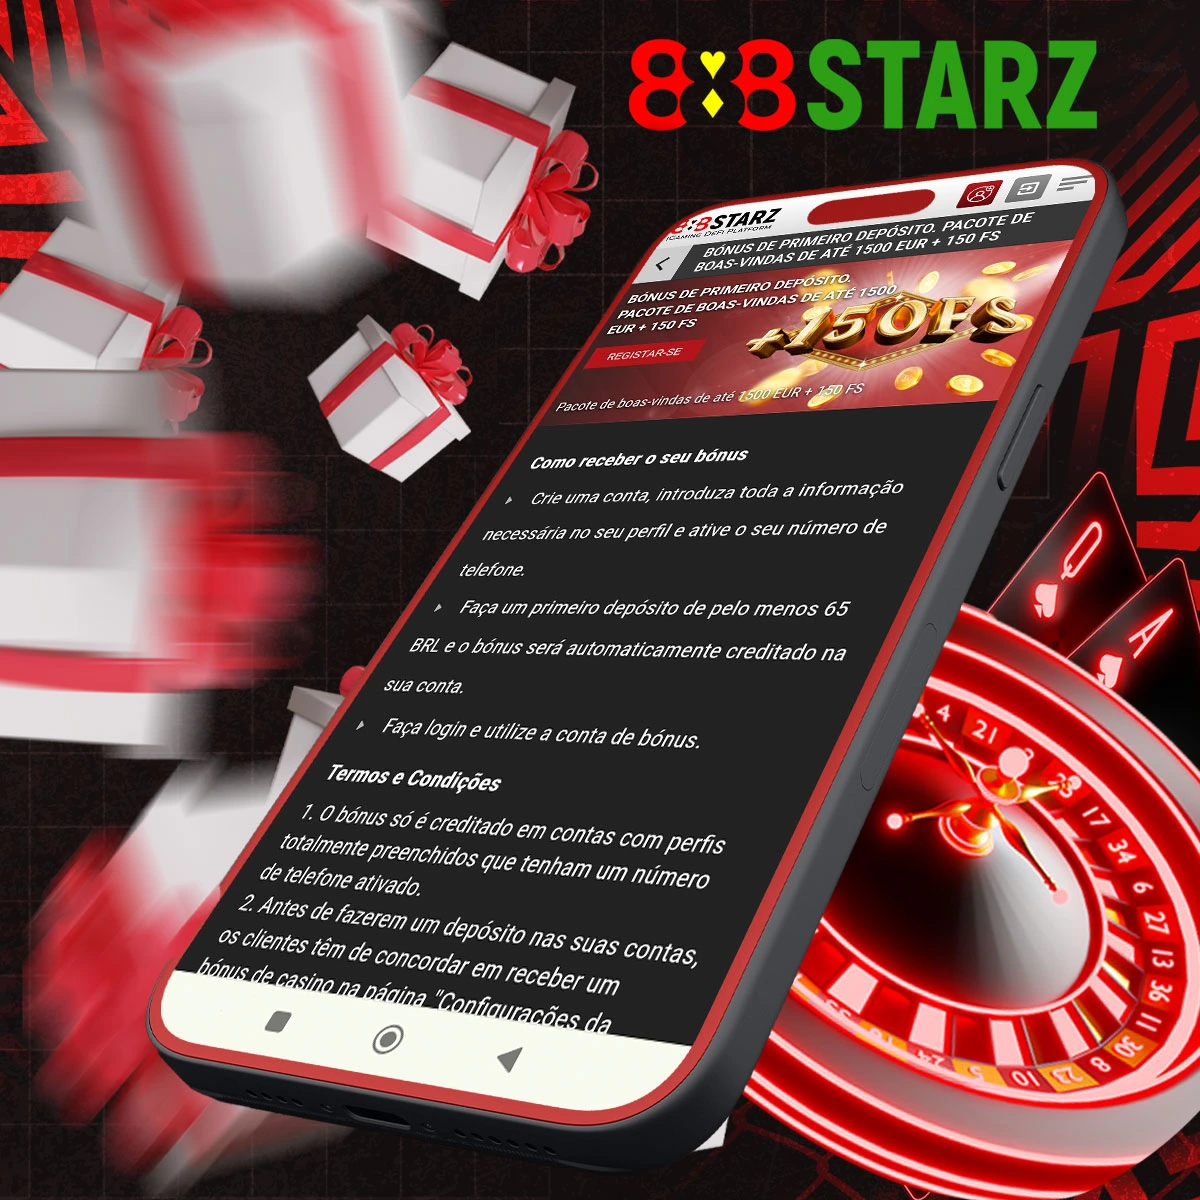 Quais são os termos e condições do bónus de casino oferecido pelo 888Starz?